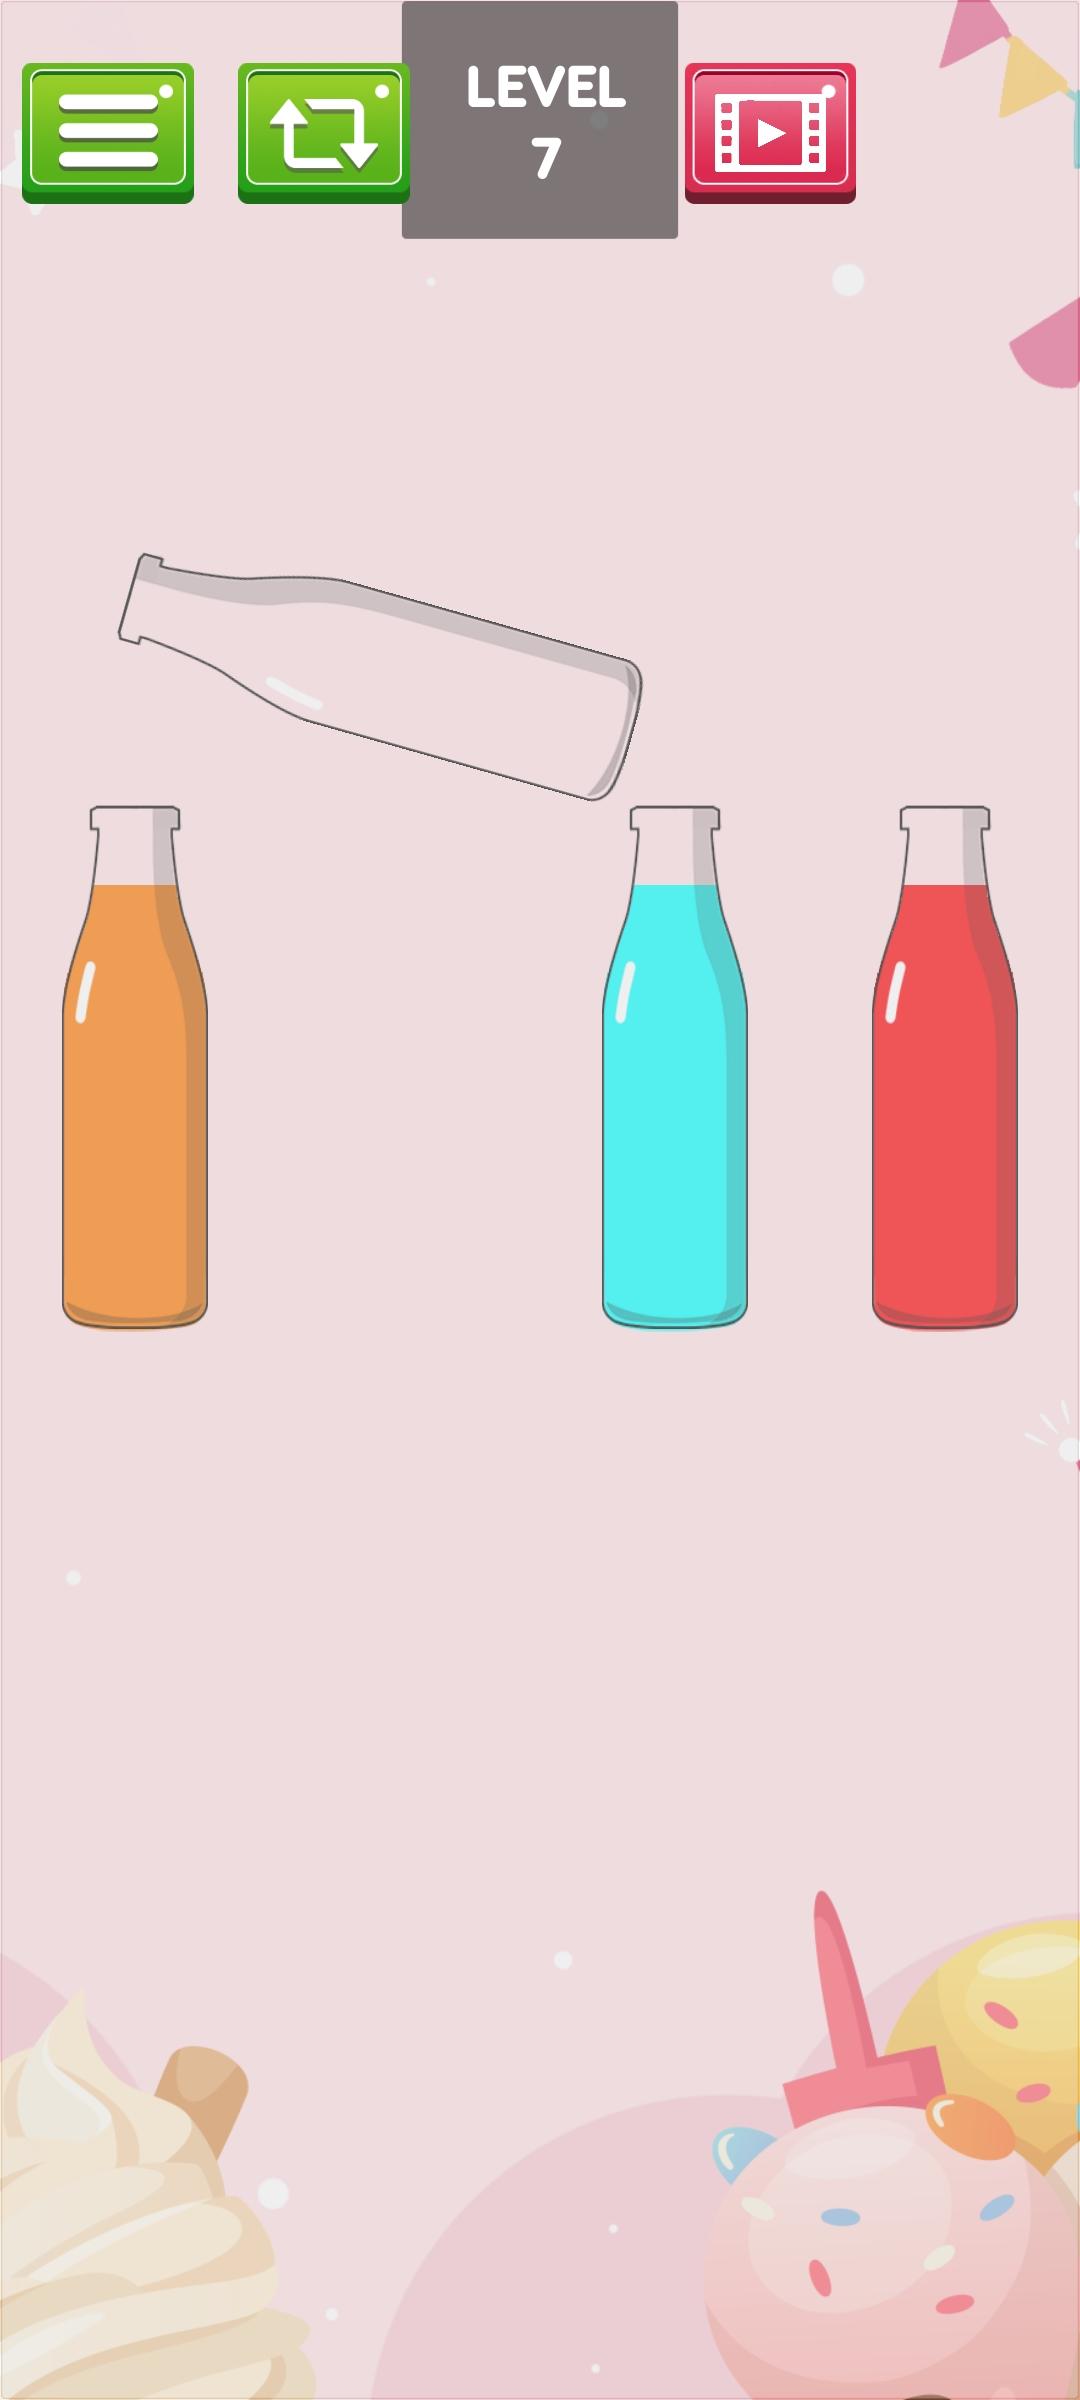 Игра переливание цветной жидкости в бутылке играть